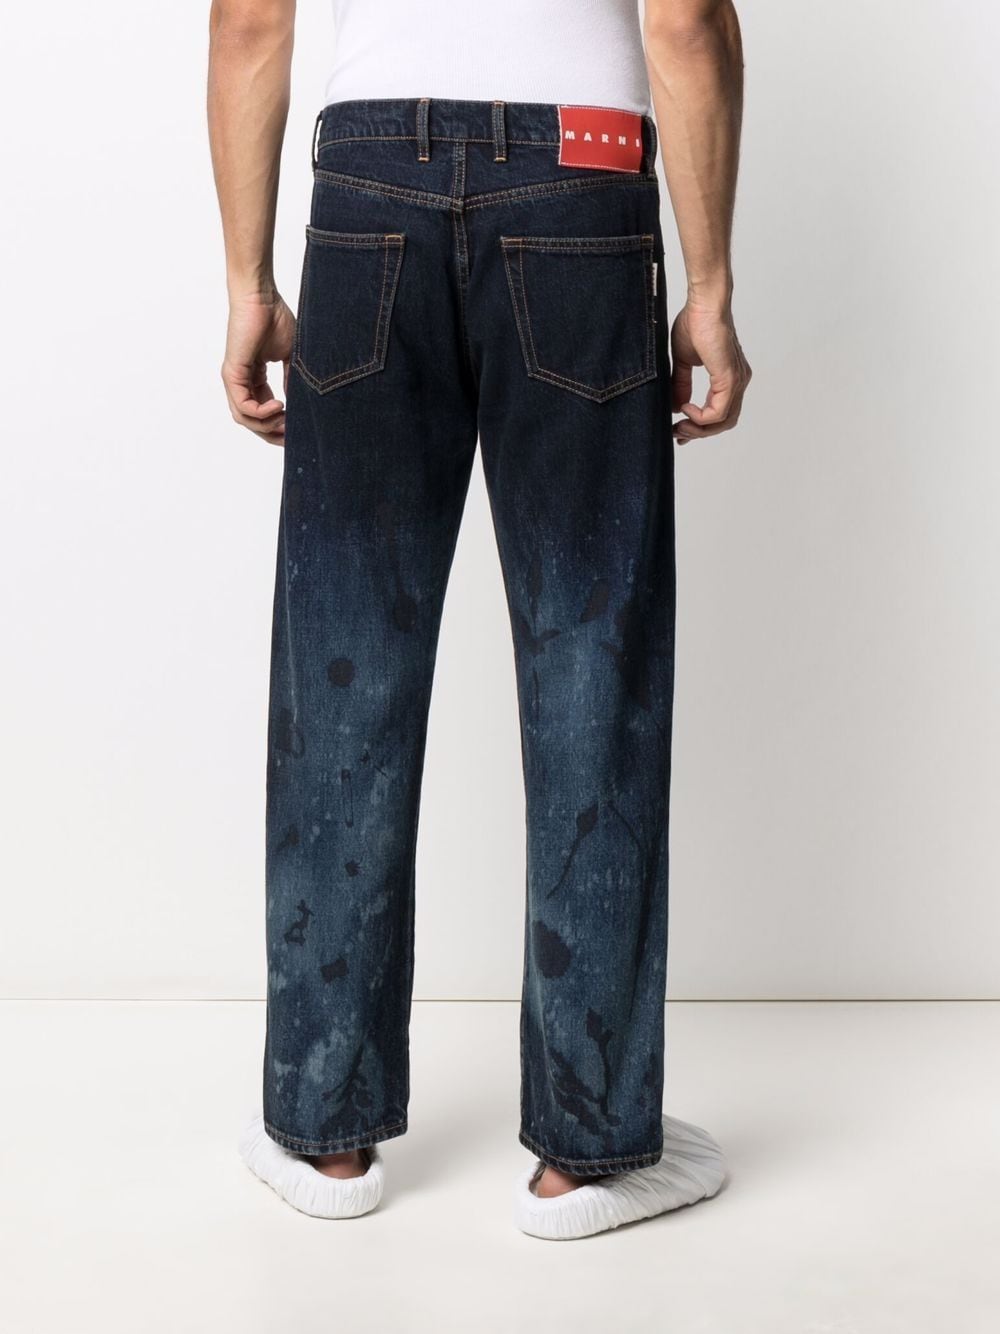 фото Marni широкие джинсы с эффектом потертости